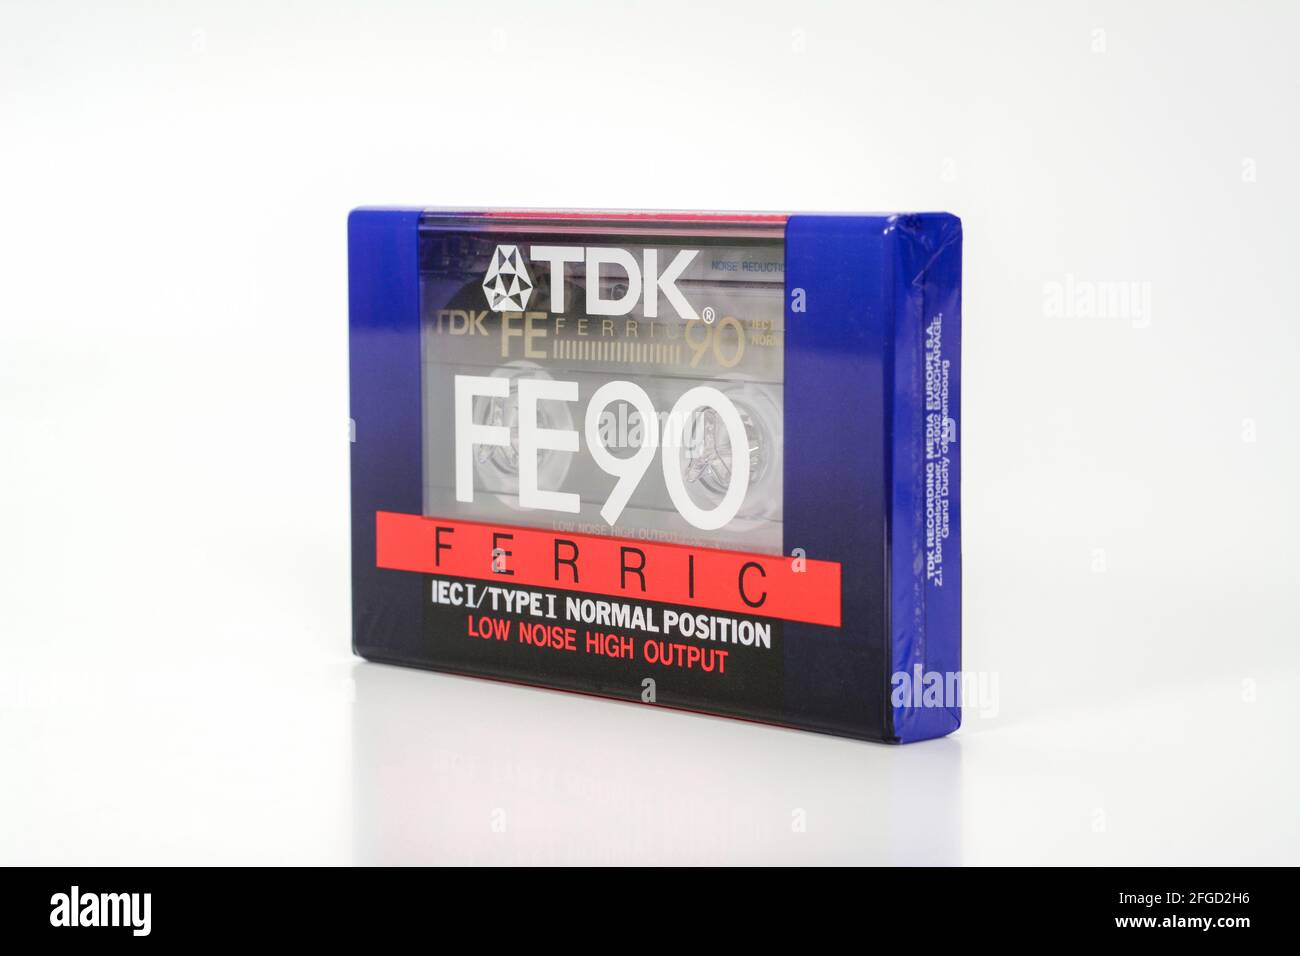 PRAGUE, RÉPUBLIQUE TCHÈQUE - 29 NOVEMBRE 2018 : cassette audio compacte TDK FE 90 Ferrique. Cassette audio sur fond blanc, vue de droite. Format analogique f Banque D'Images